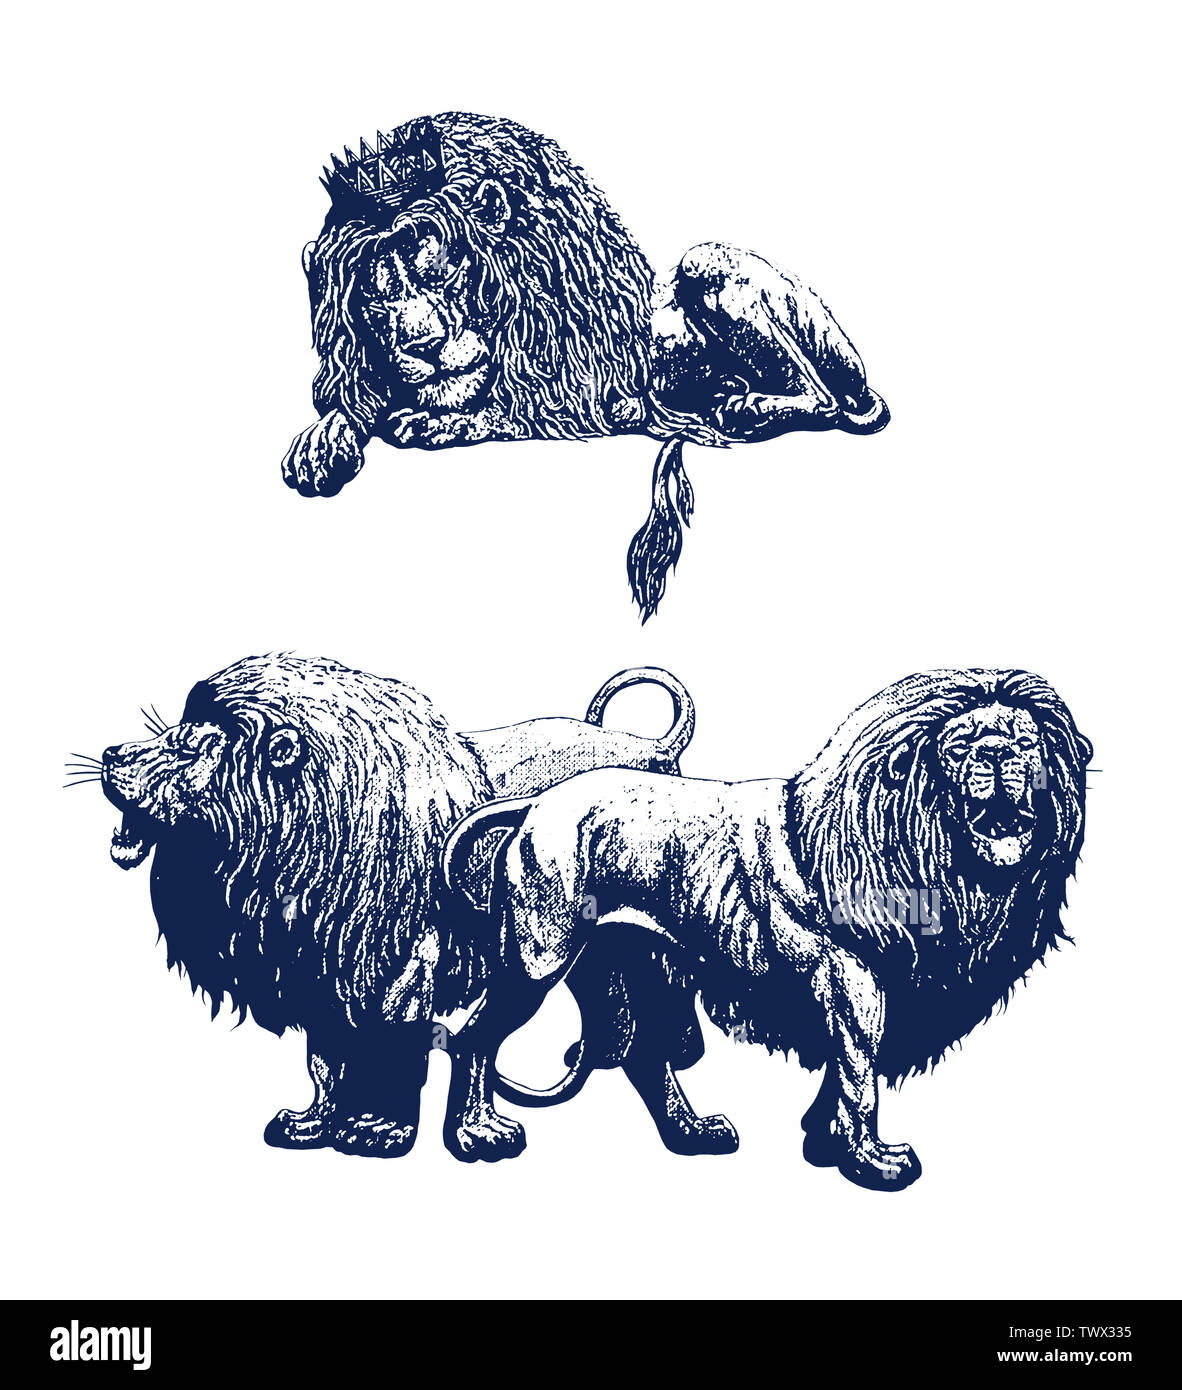 Dormir et lion rugissant. Lions 2 illustrations. Big cat dessin à l'encre. Banque D'Images